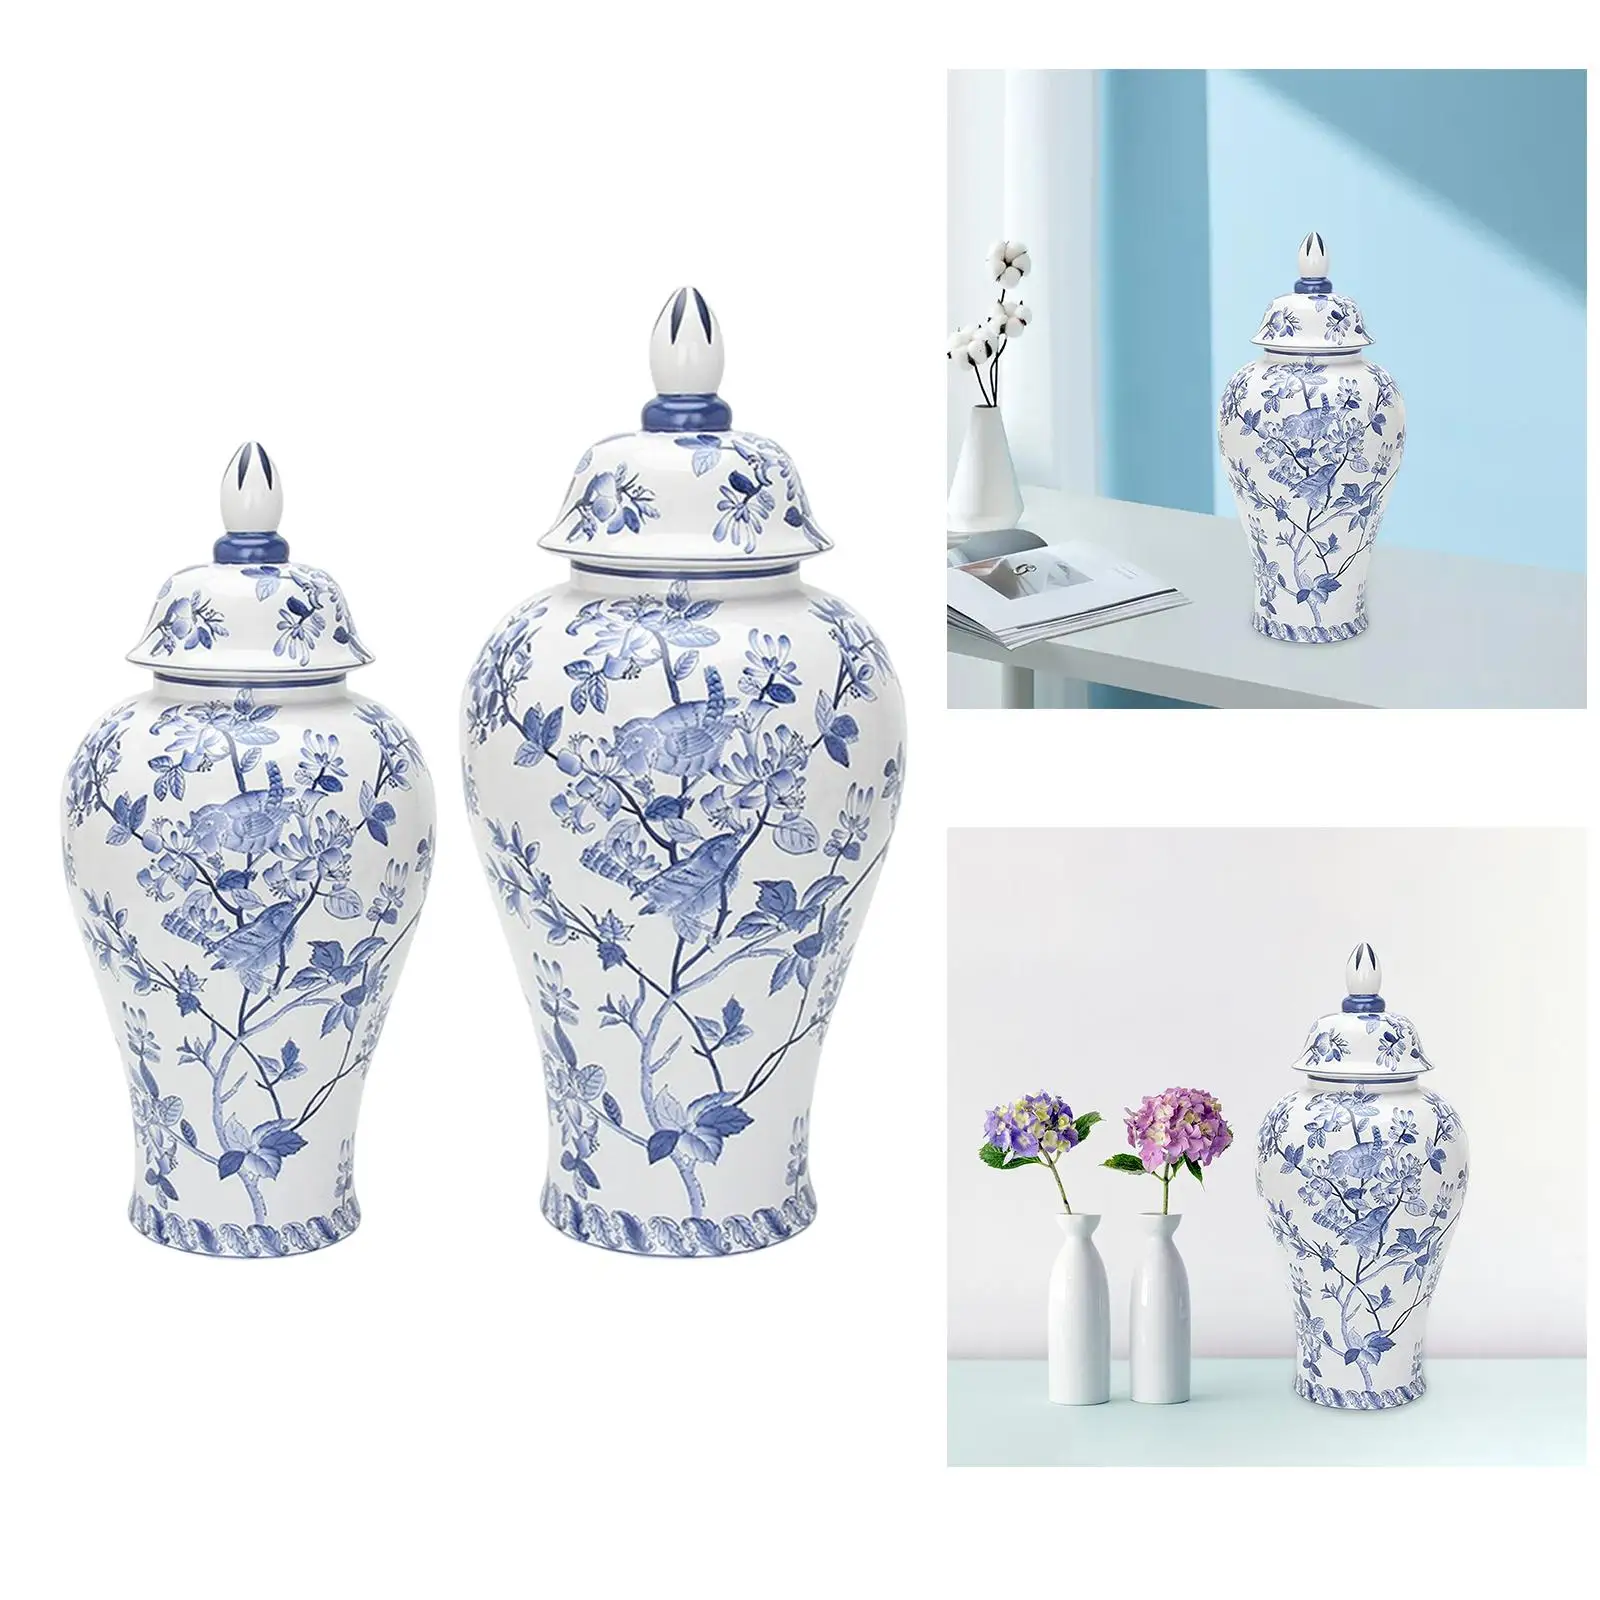 Porcelain Ginger Jar Floral Arrangement Desk Ceramic Flower Vase for Bedroom